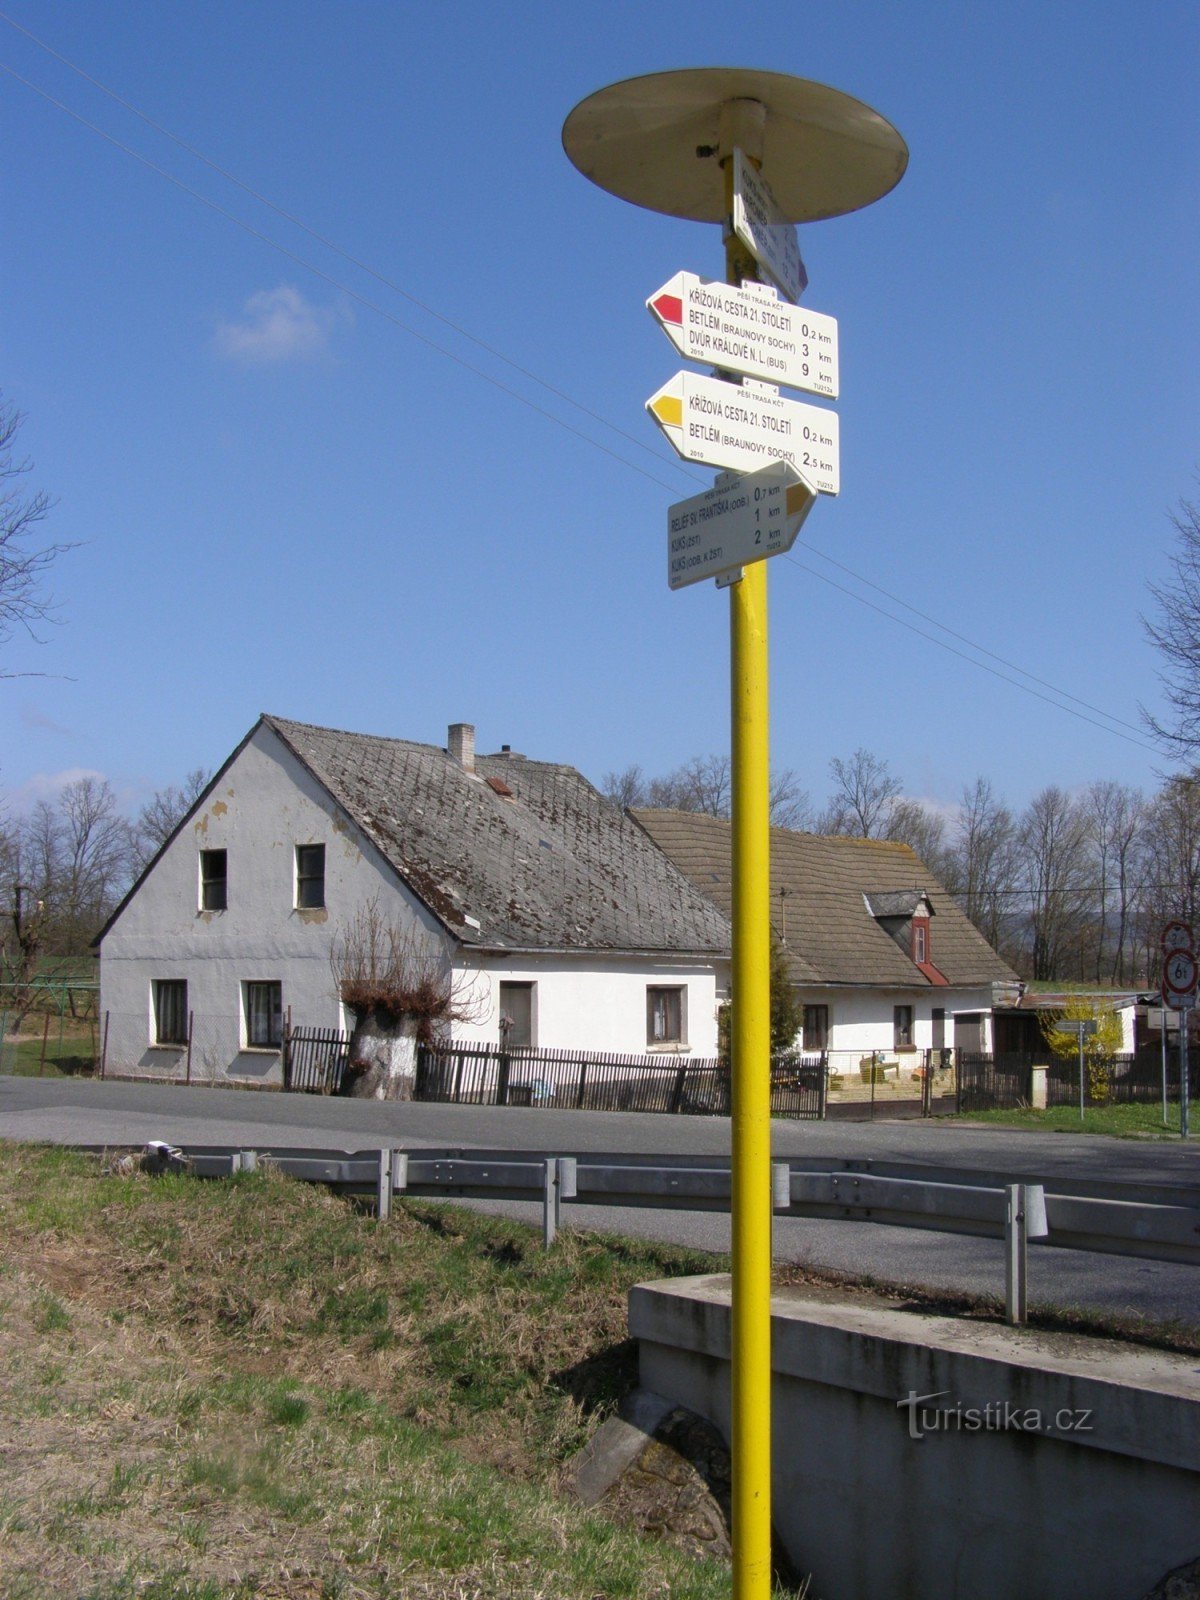 Τουριστικό σταυροδρόμι Stanovice - κάτω από τους Σταθμούς του Σταυρού του 21ου αιώνα